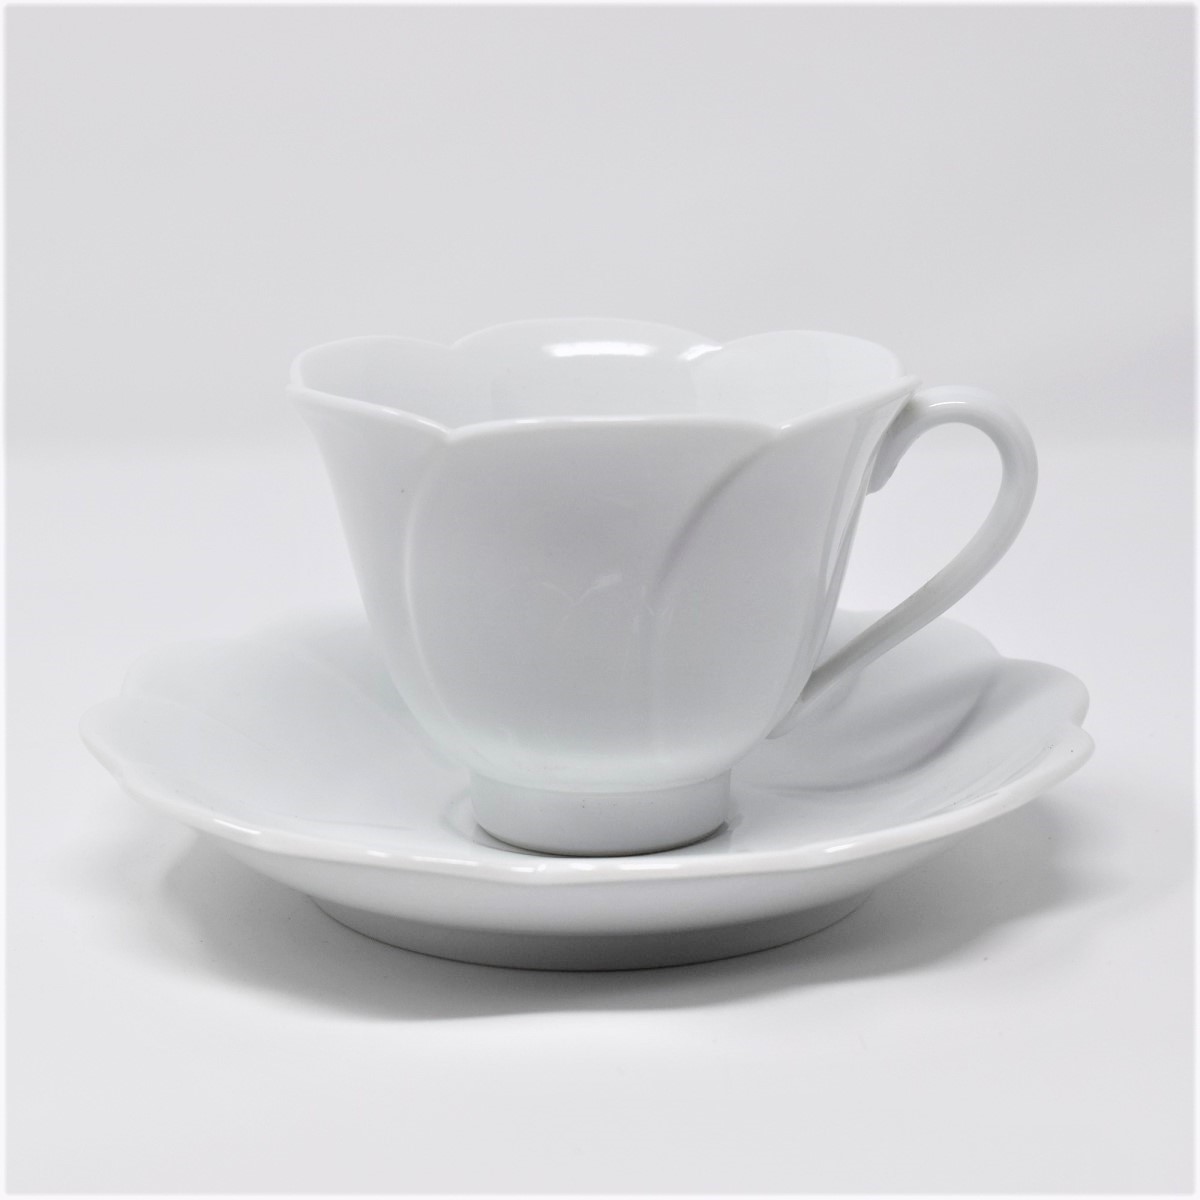 有田焼 窯元 博泉窯 白磁花型コーヒー碗 シンプル きれいな白磁 贈り物 ギフト コーヒーカップ カップ ソーサ 食器 Iichi ハンドメイド クラフト作品 手仕事品の通販